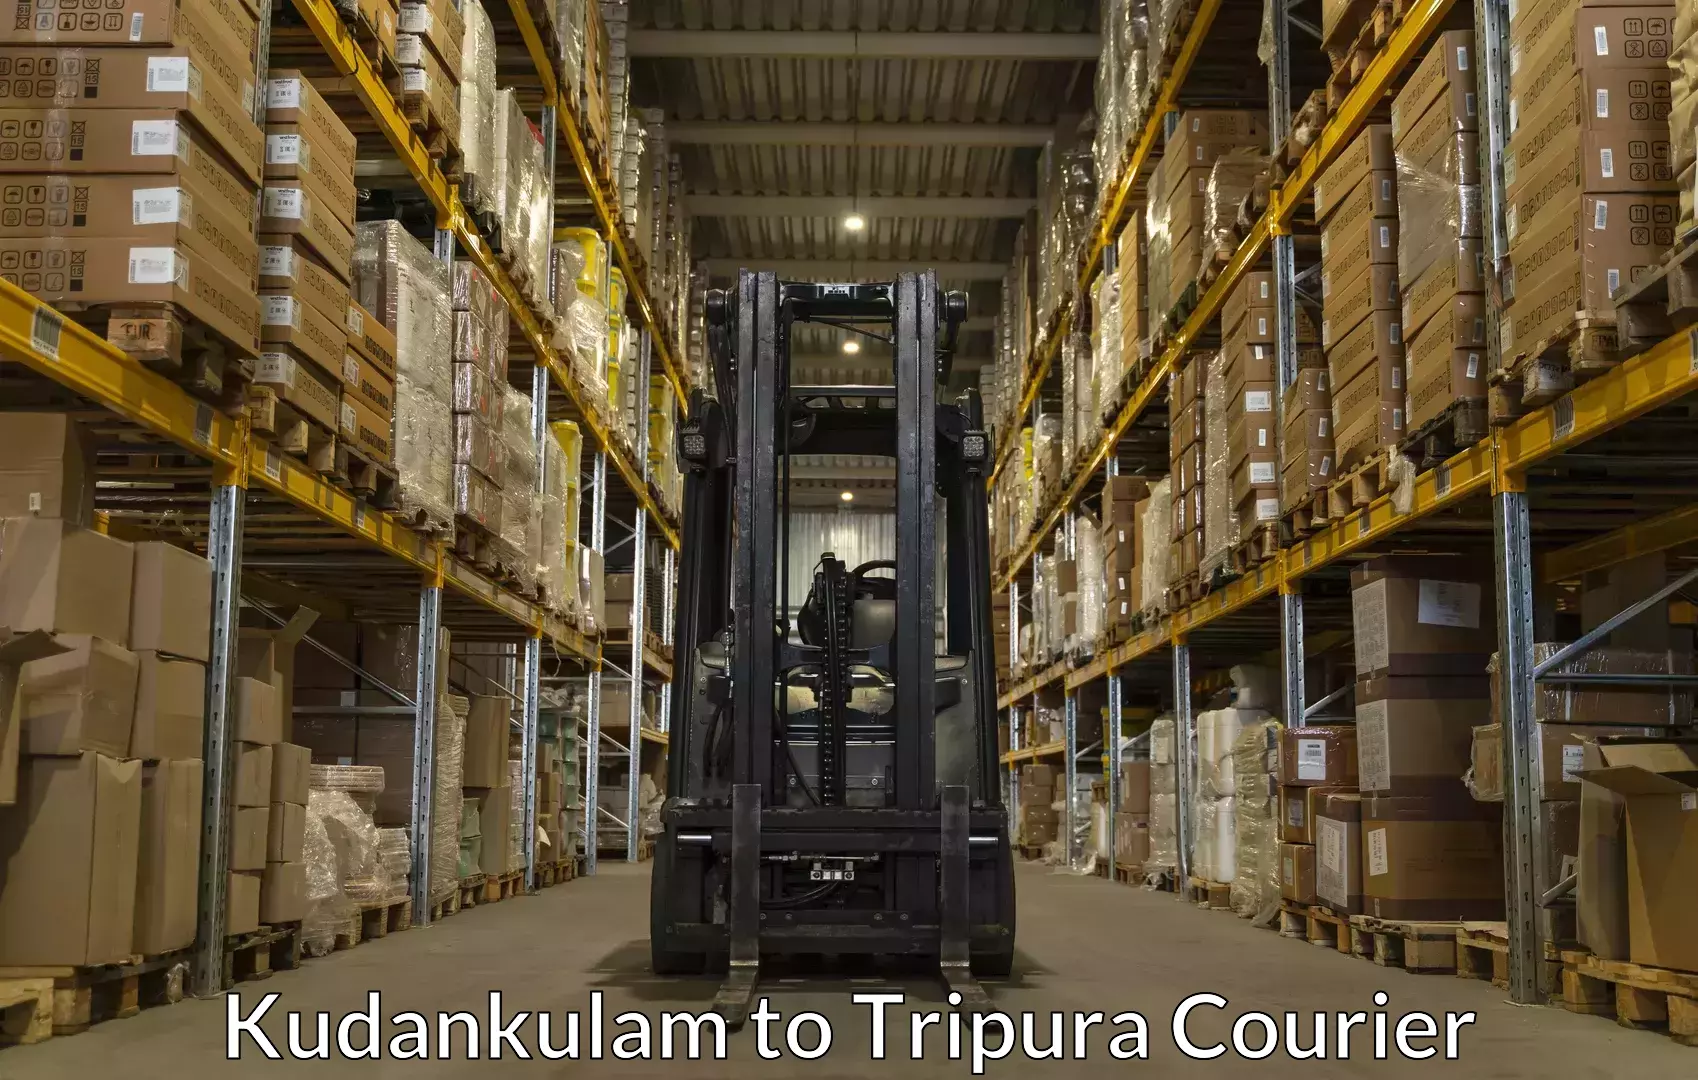 Luggage shipment specialists Kudankulam to Kailashahar